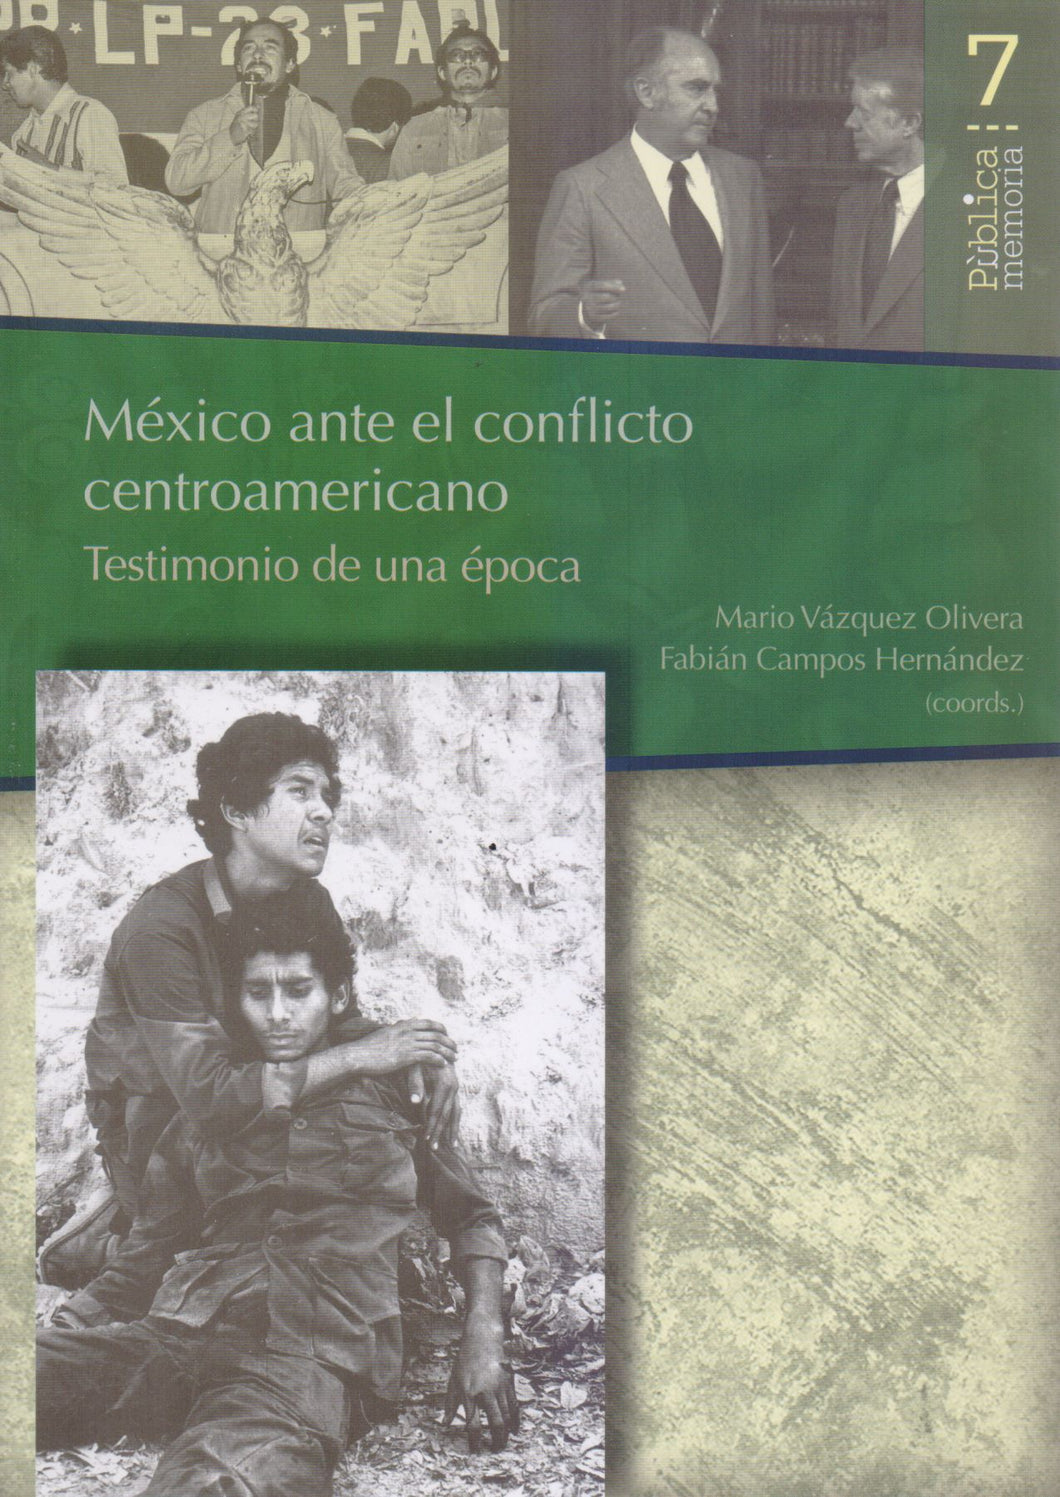 México ante el conflicto centroamericano testimonio de una época. - Mario Vázquez Olivera y Fabián Campos Hernández